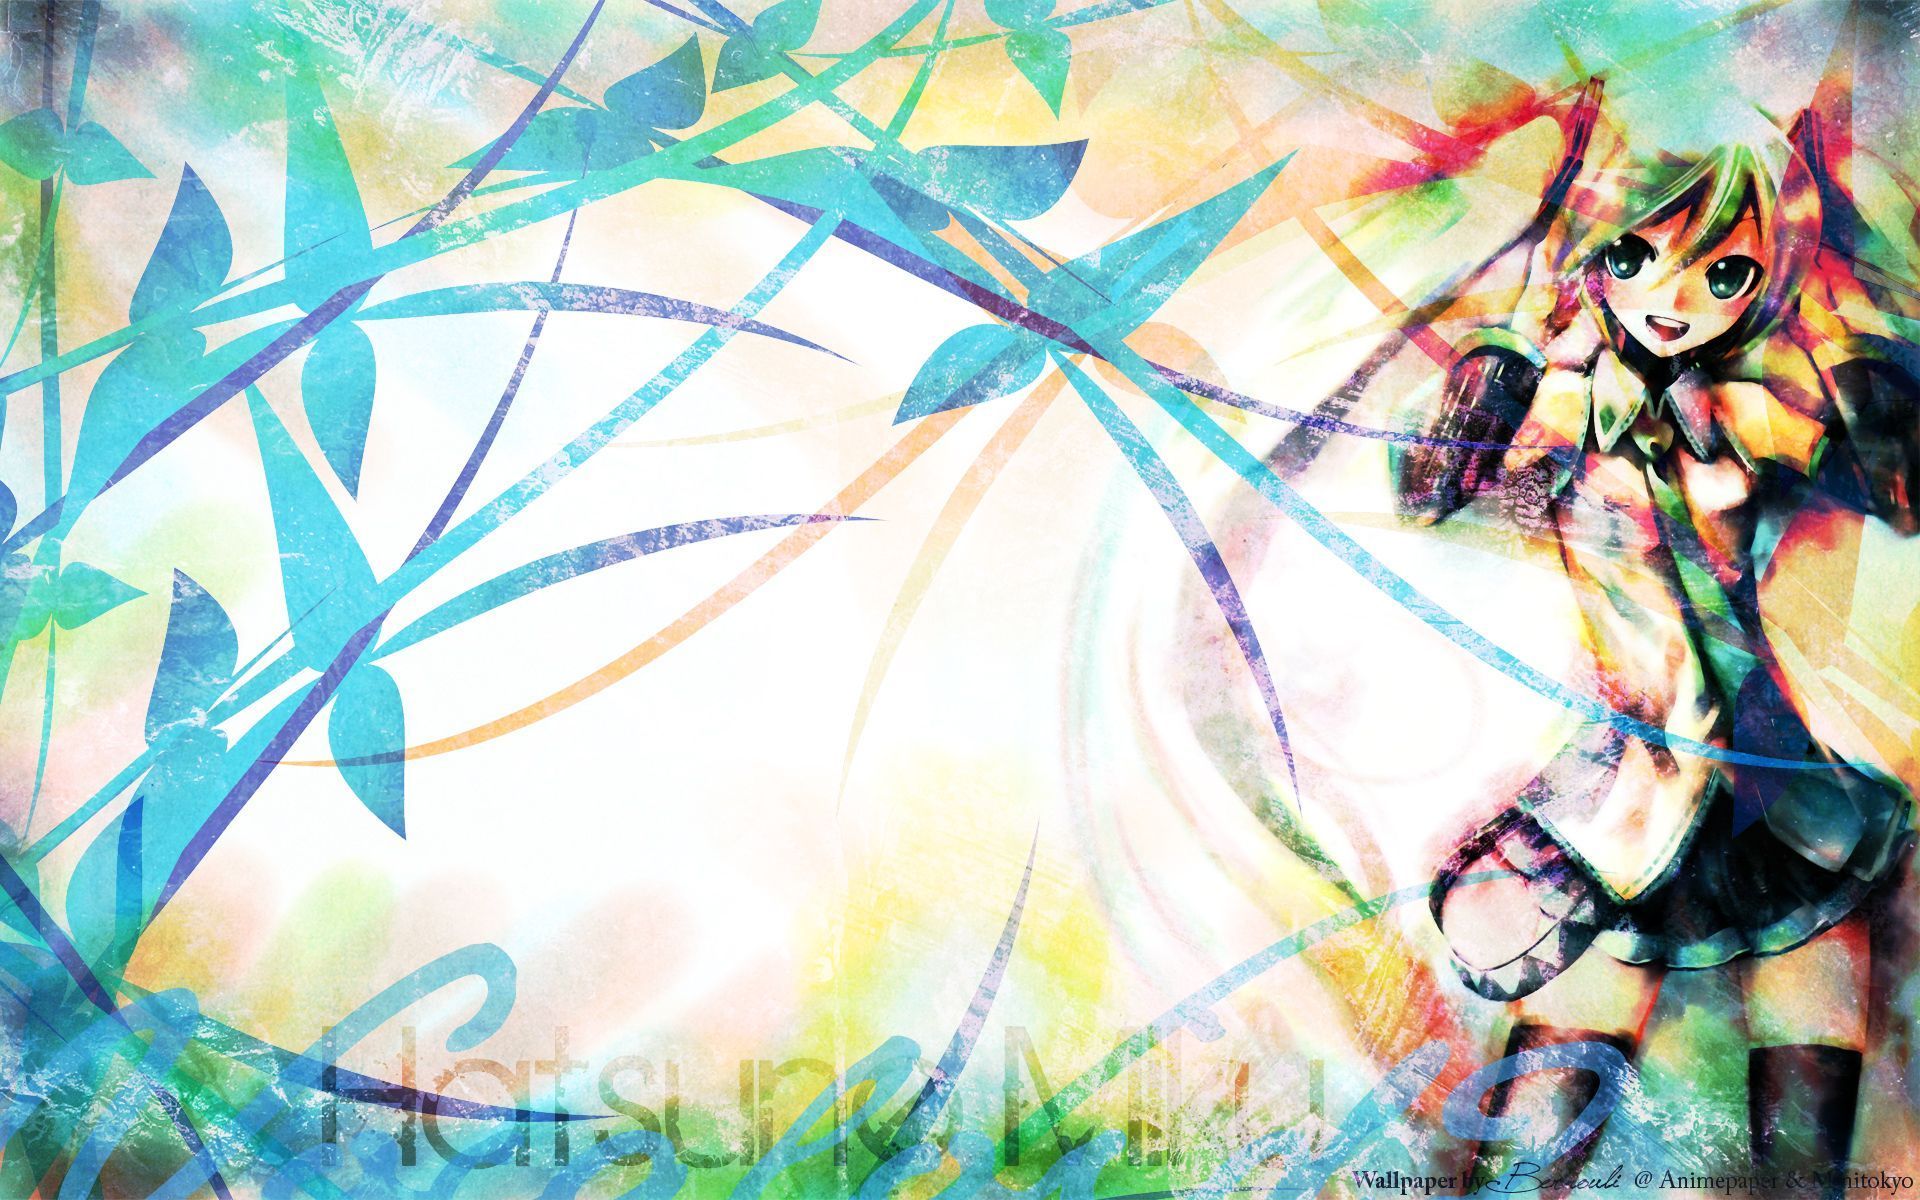 Hatsune Miku Wallpaper | 1920x1200 | ID:25506